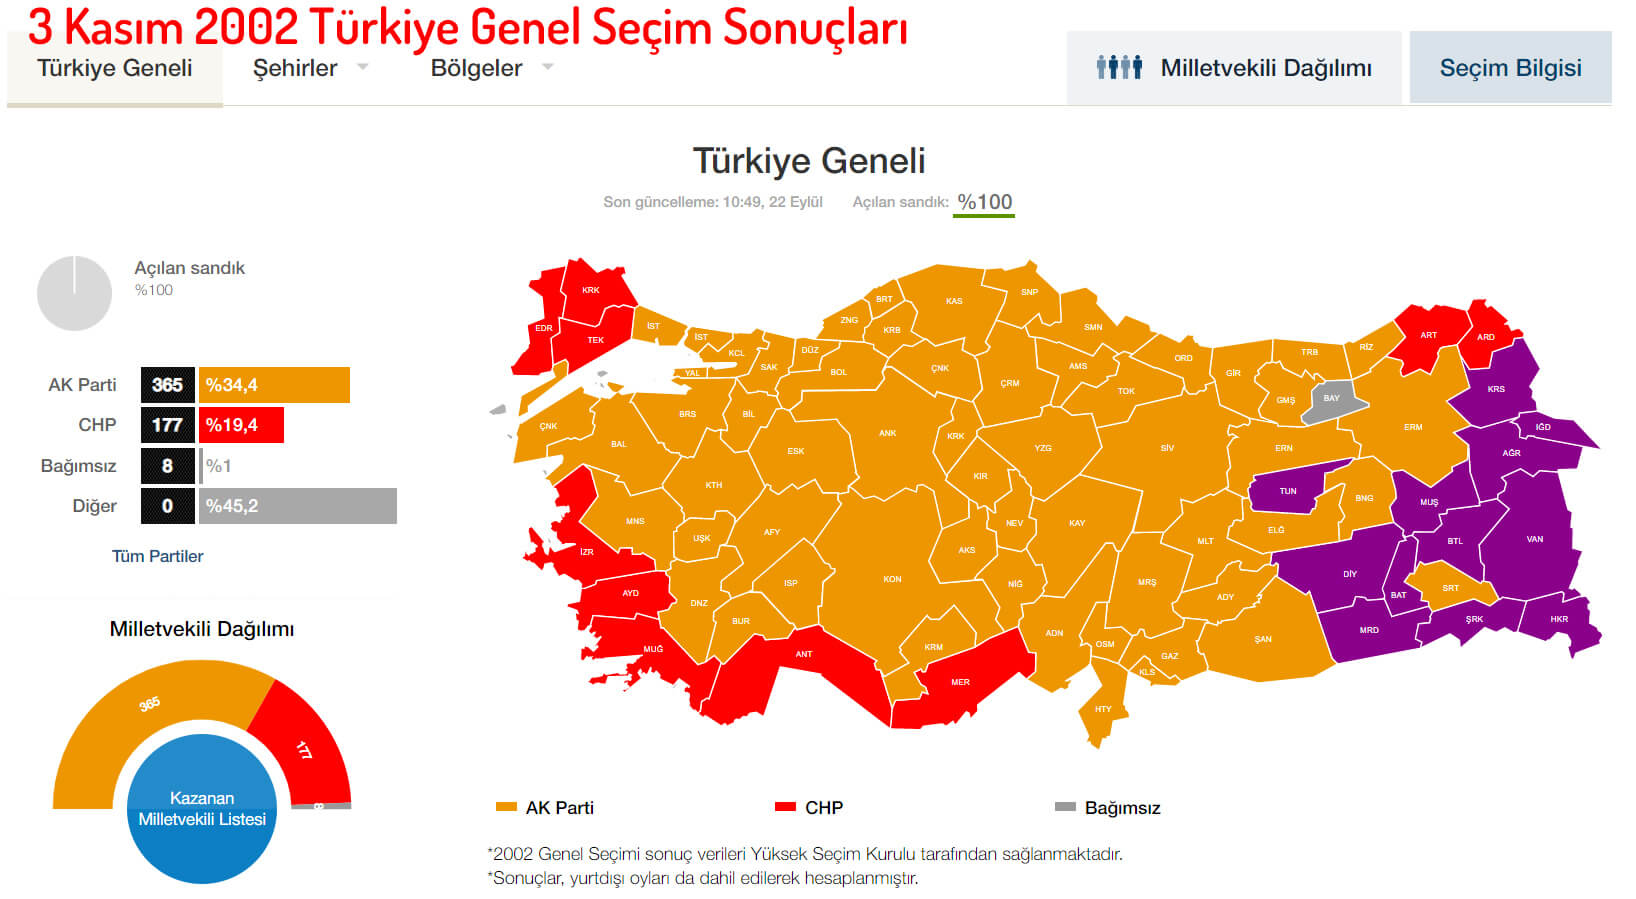 3 Kasım 2002 Türkiye Genel Seçim Sonuçları